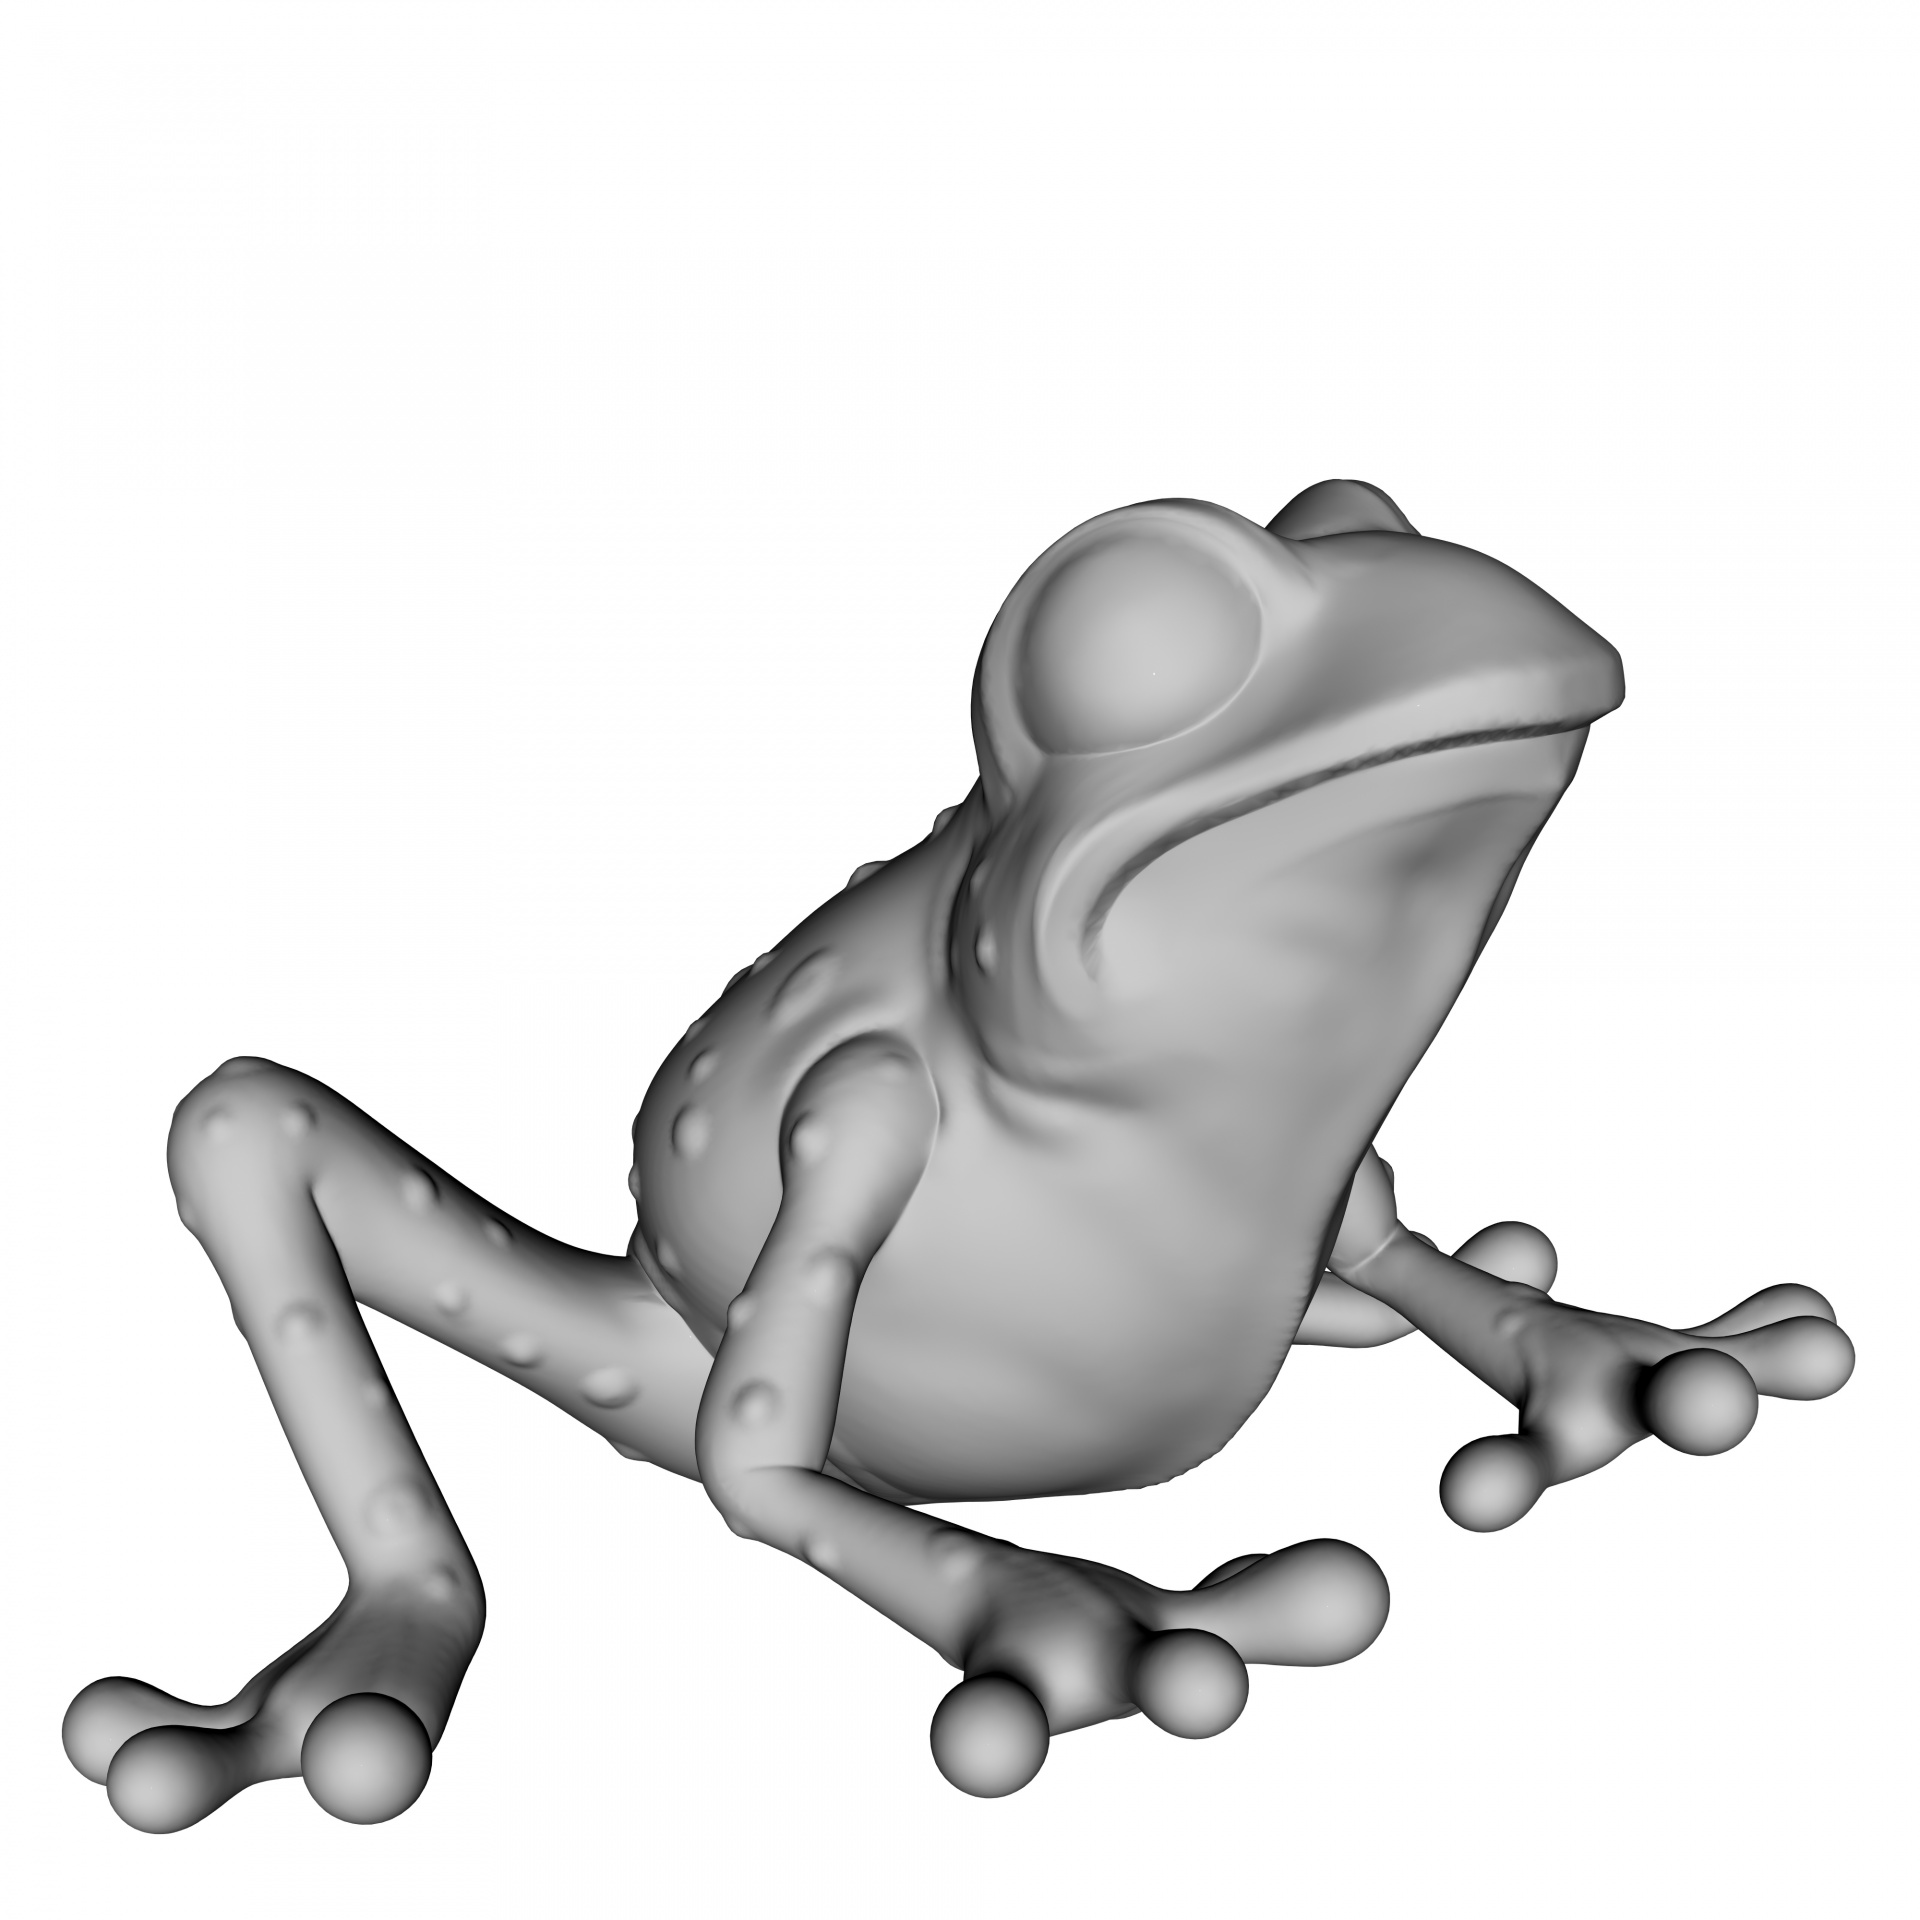 grey frog isolated on white background